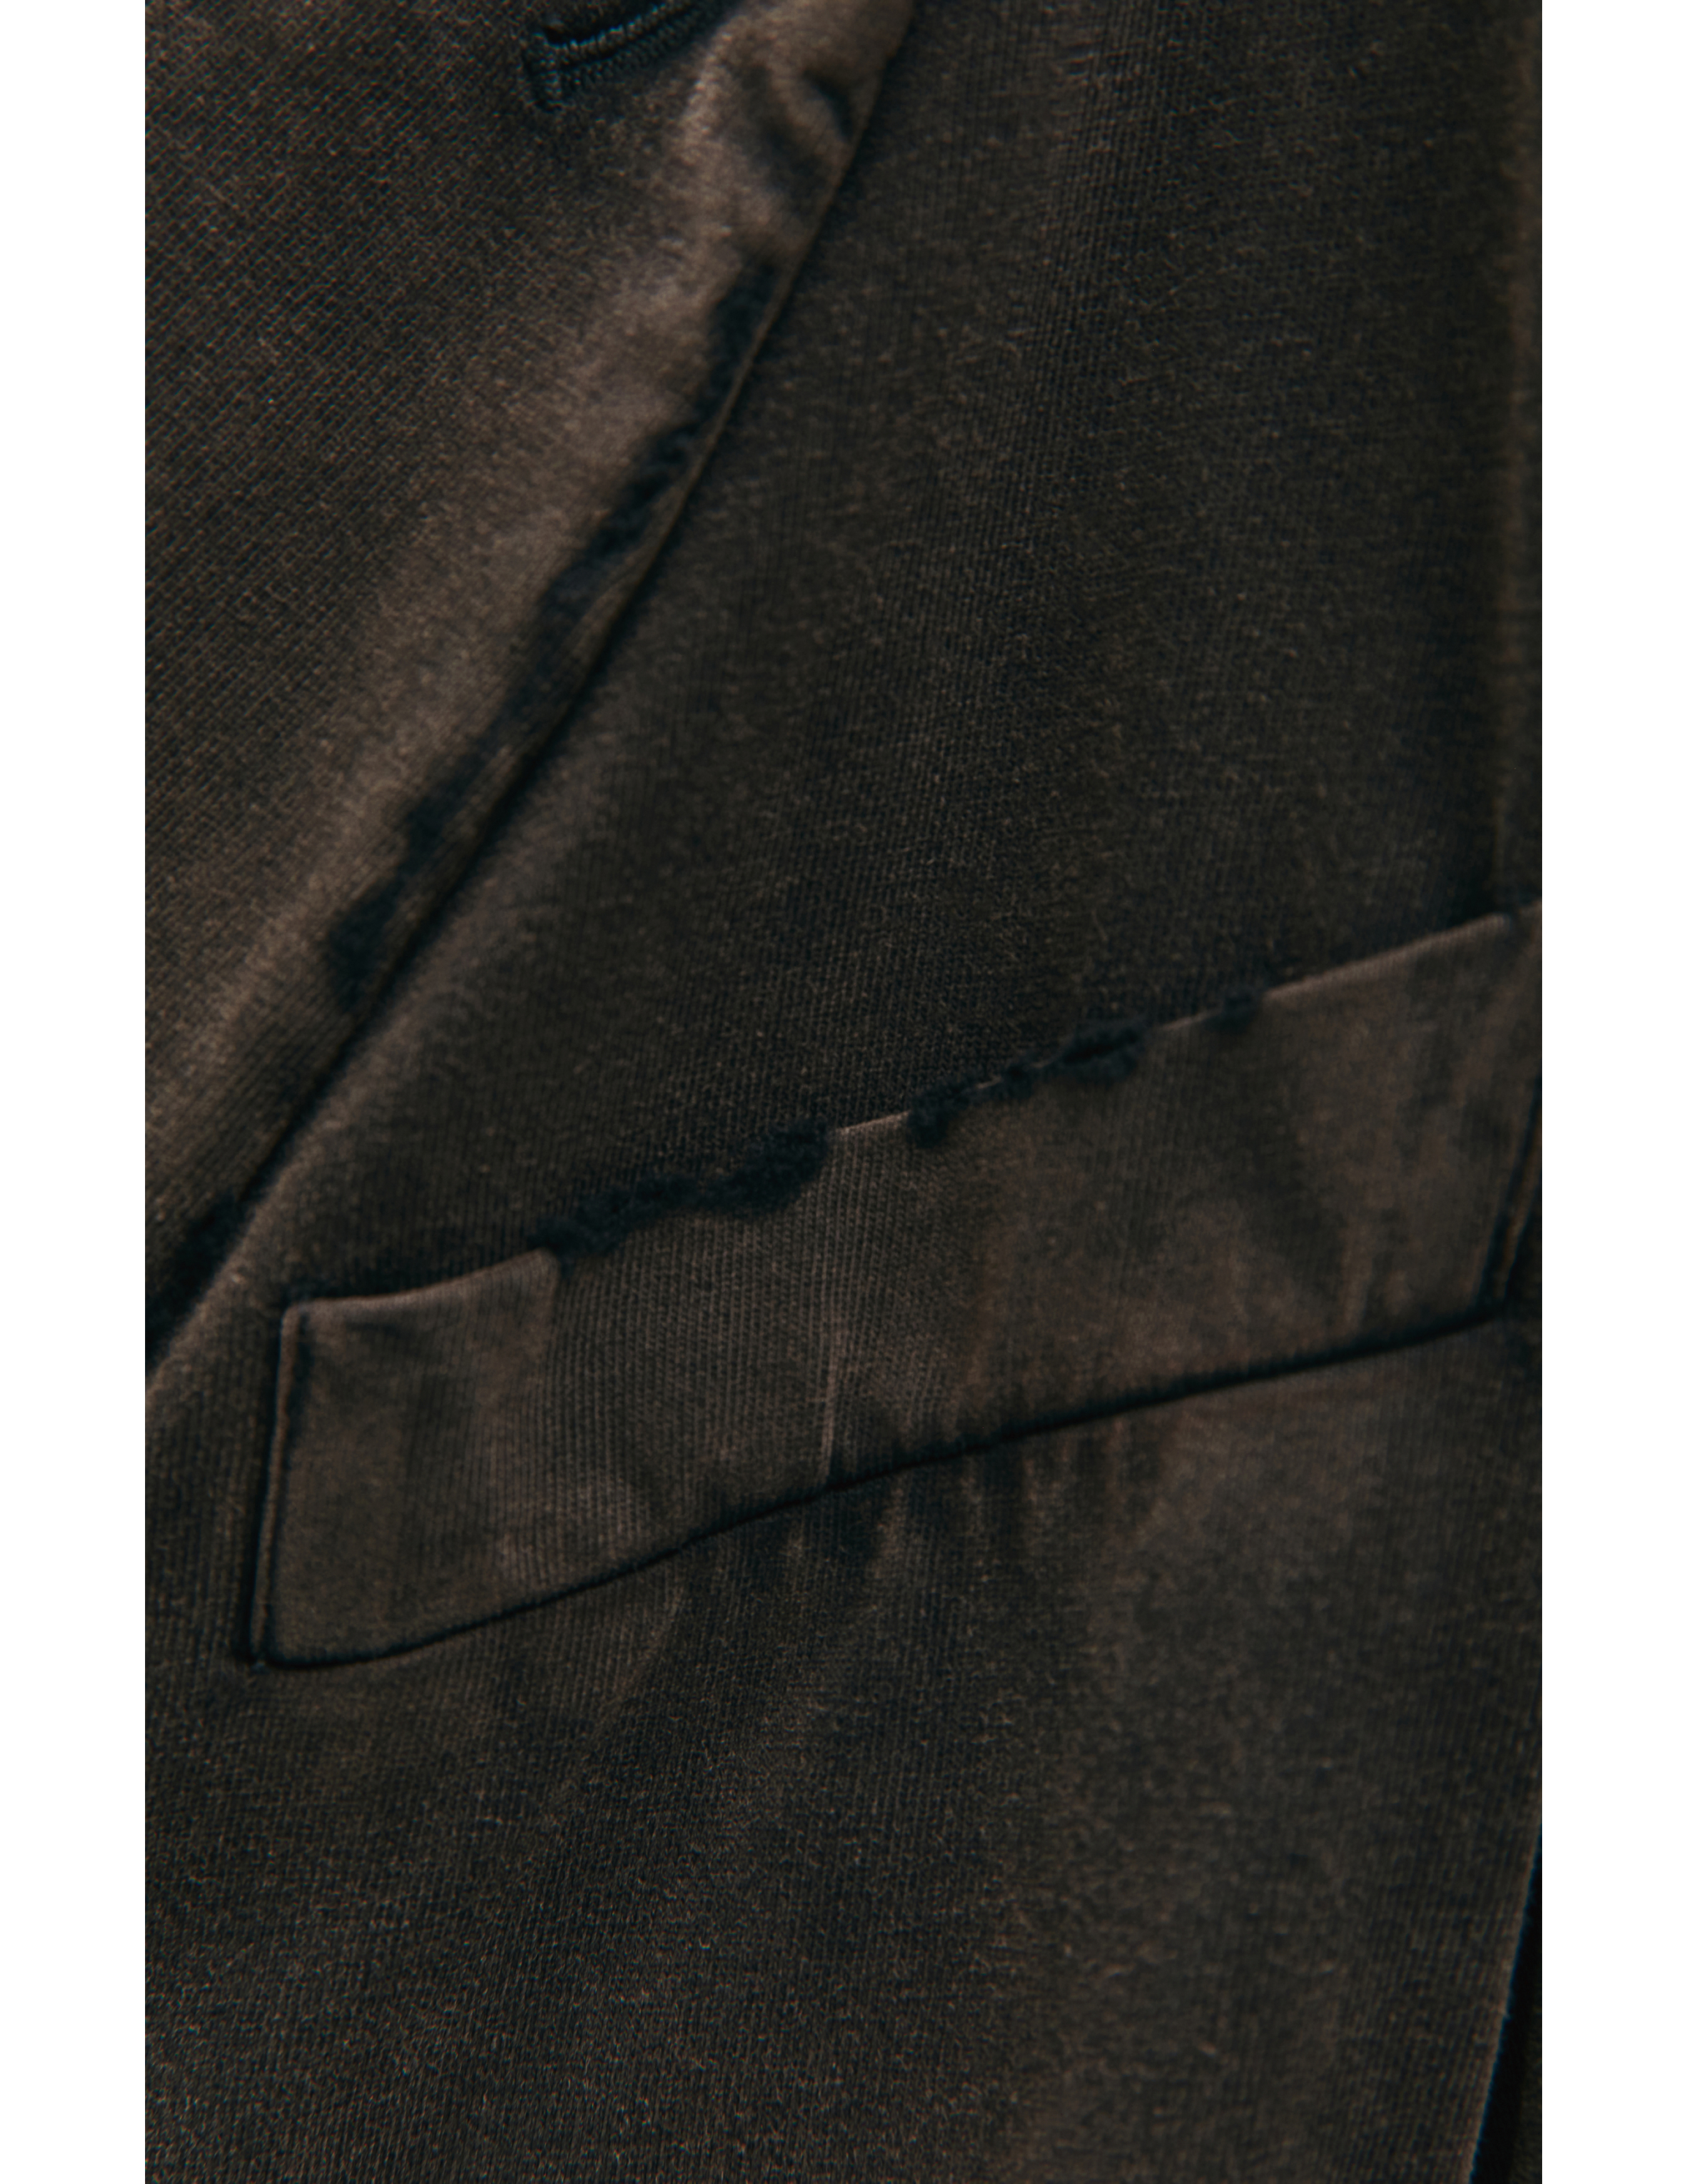 Двубортный пиджак с выстиранным эффектом Balenciaga 662390/TAV04/1000, размер M 662390/TAV04/1000 - фото 3